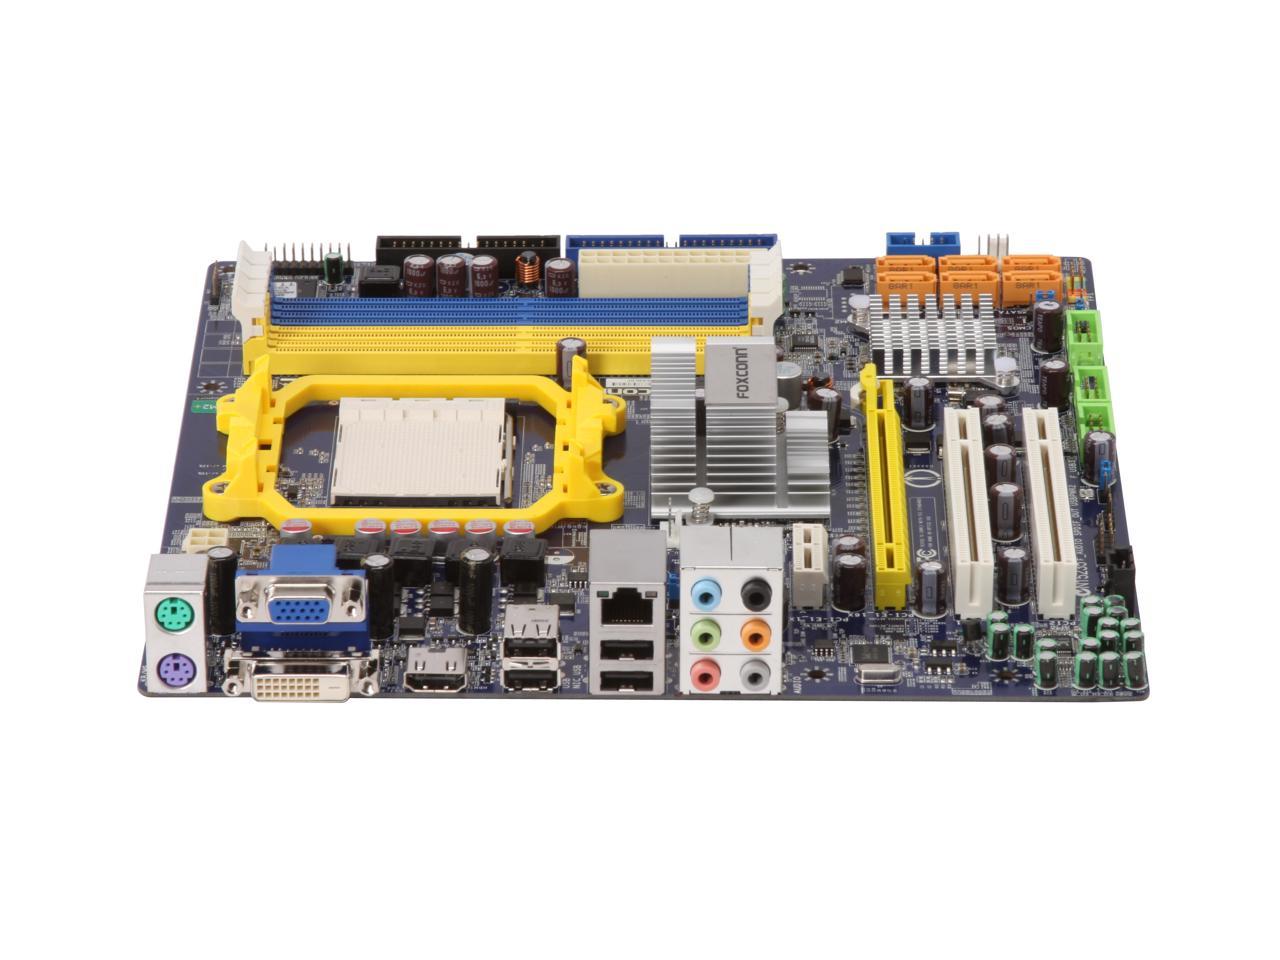 dx4860 motherboard specs